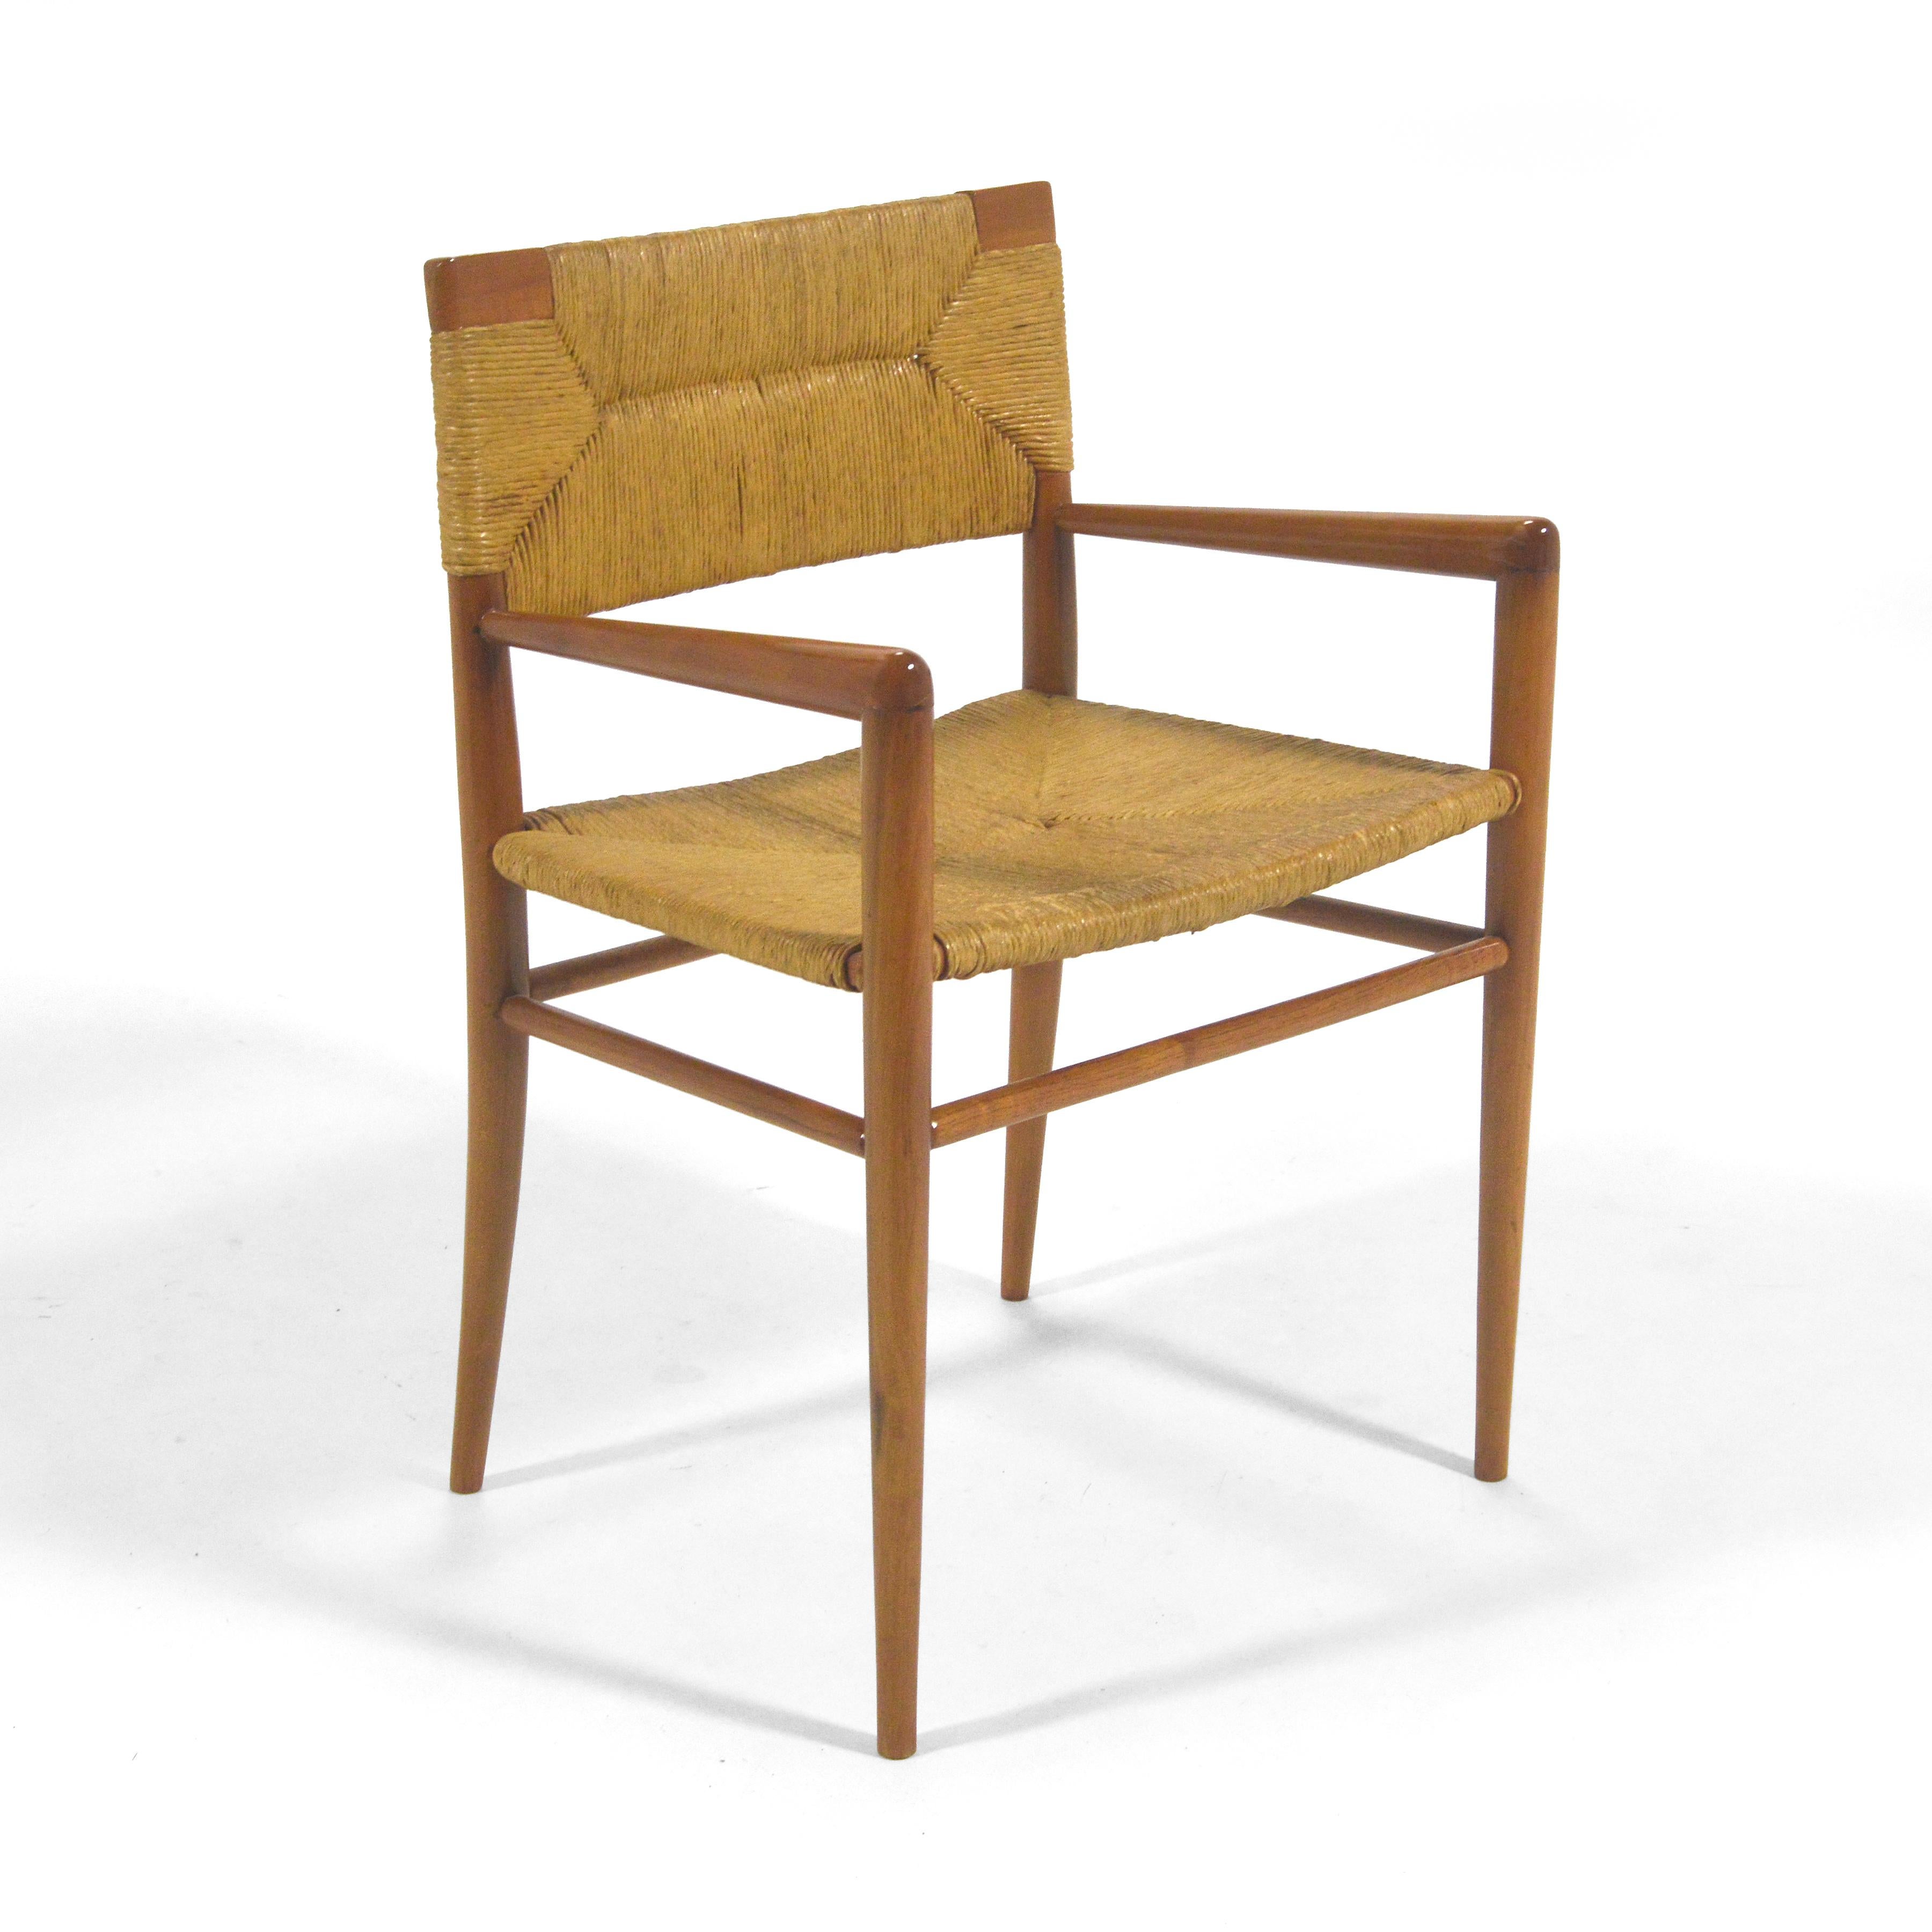 Das subtile, fast strenge Design des Loungesessels von Mel Smilow positioniert ihn irgendwo zwischen skandinavischer und französischer Ästhetik. Das Gestell aus Nussbaumholz trägt einen Sitz und eine Rückenlehne aus geflochtenem Binsen. Das